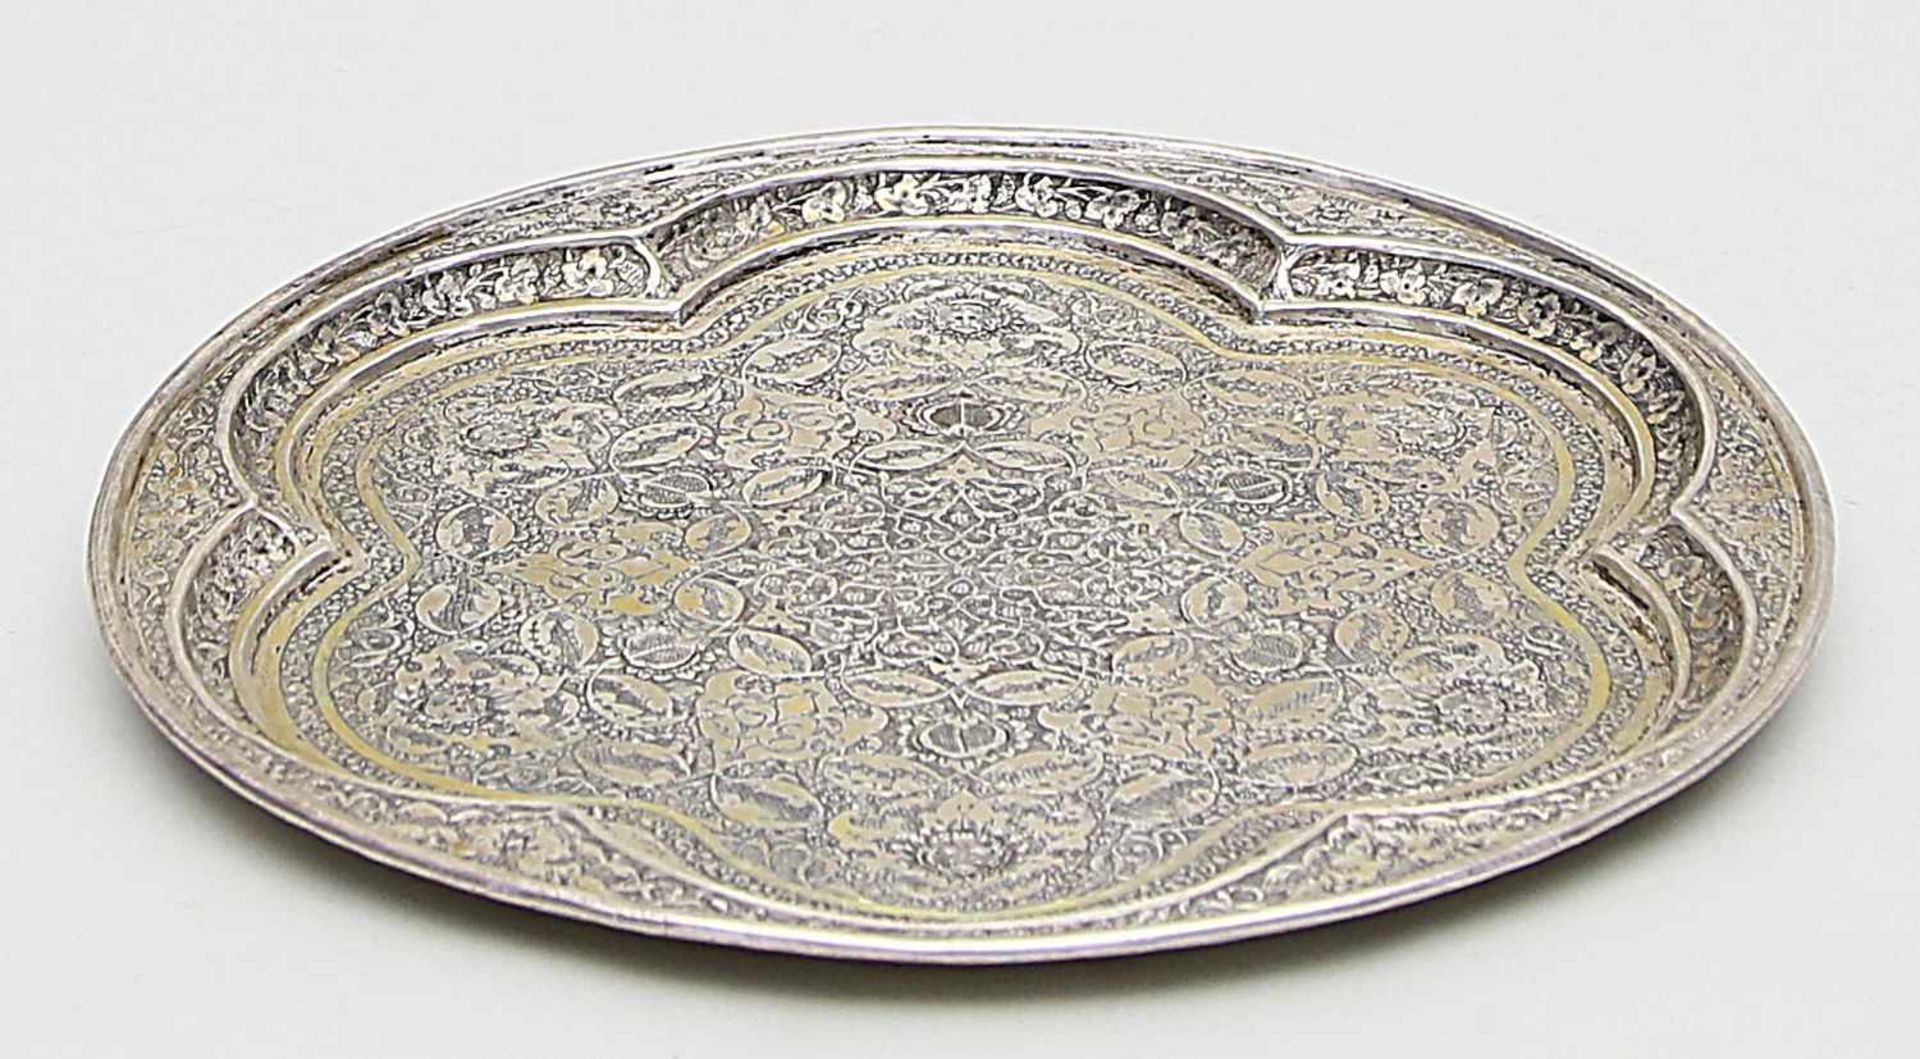 Rundes Tablett.Silber, geprüft, 462 g. Reich ziseliertes, florales Dekor. Vorderer Orient, 20. Jh.